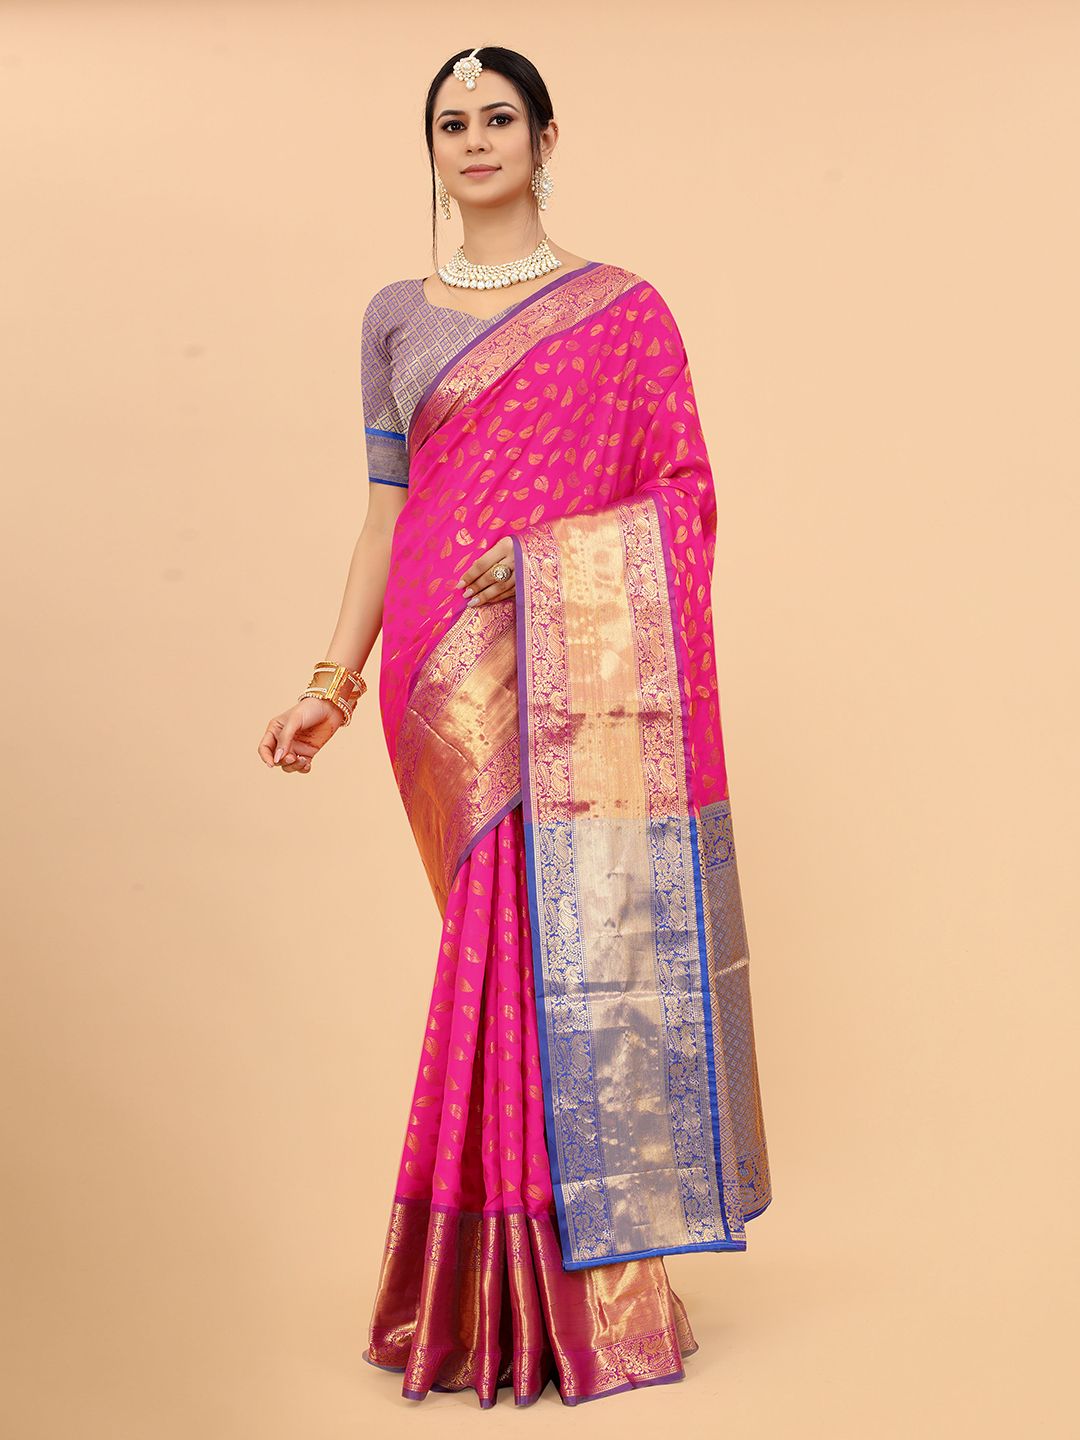 VANAKARA Floral Woven Design Zari Banarasi Saree Price in India